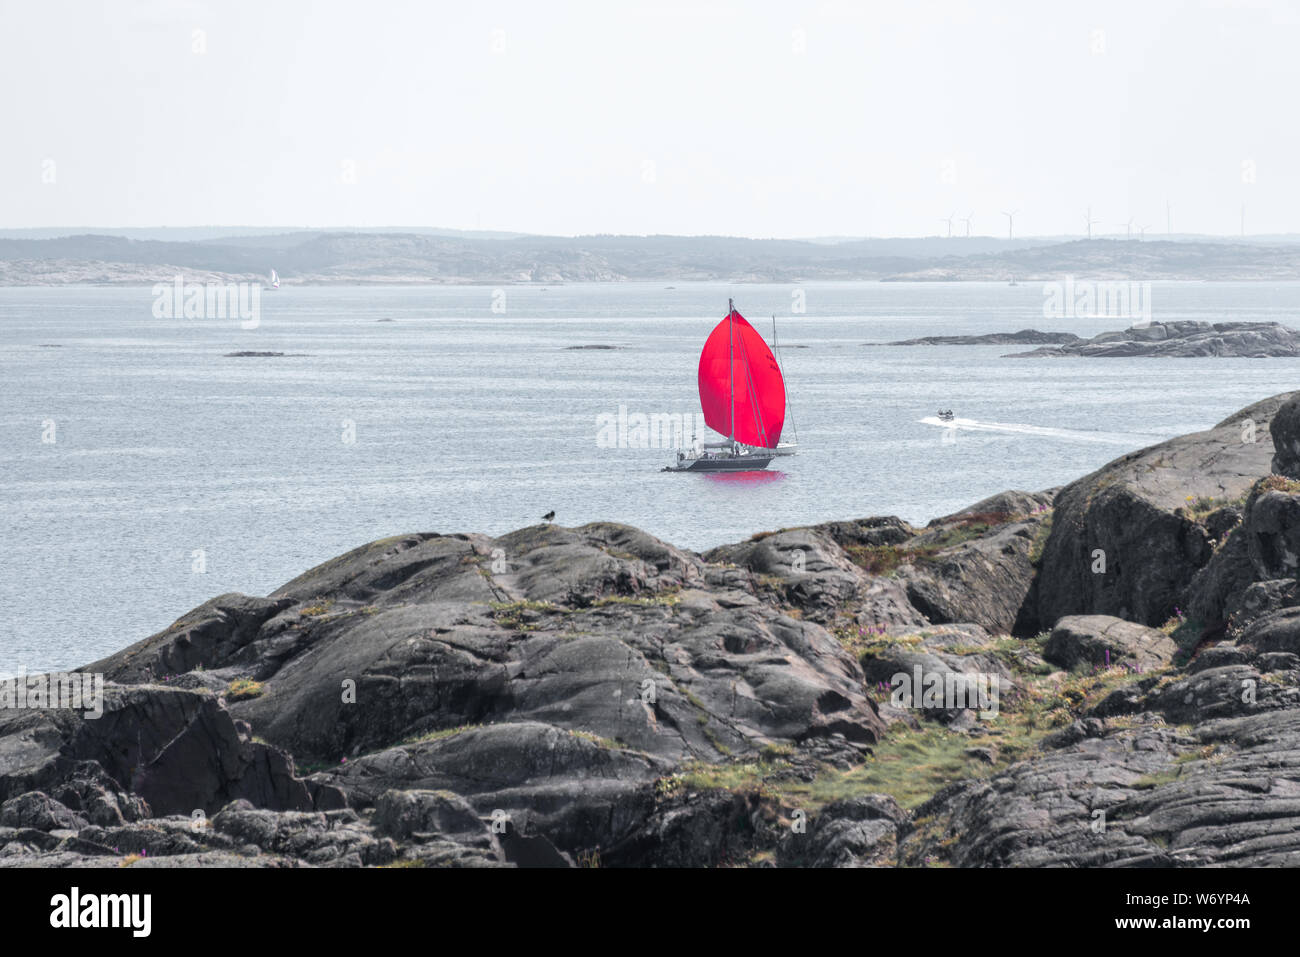 Ursholmen, Schweden - Juli 26, 2019: Blick auf ein Segelschiff mit einem roten Segel vor der Insel Ursholmen in der schwedischen Kosterhavet Nationalpark im Westen Stockfoto